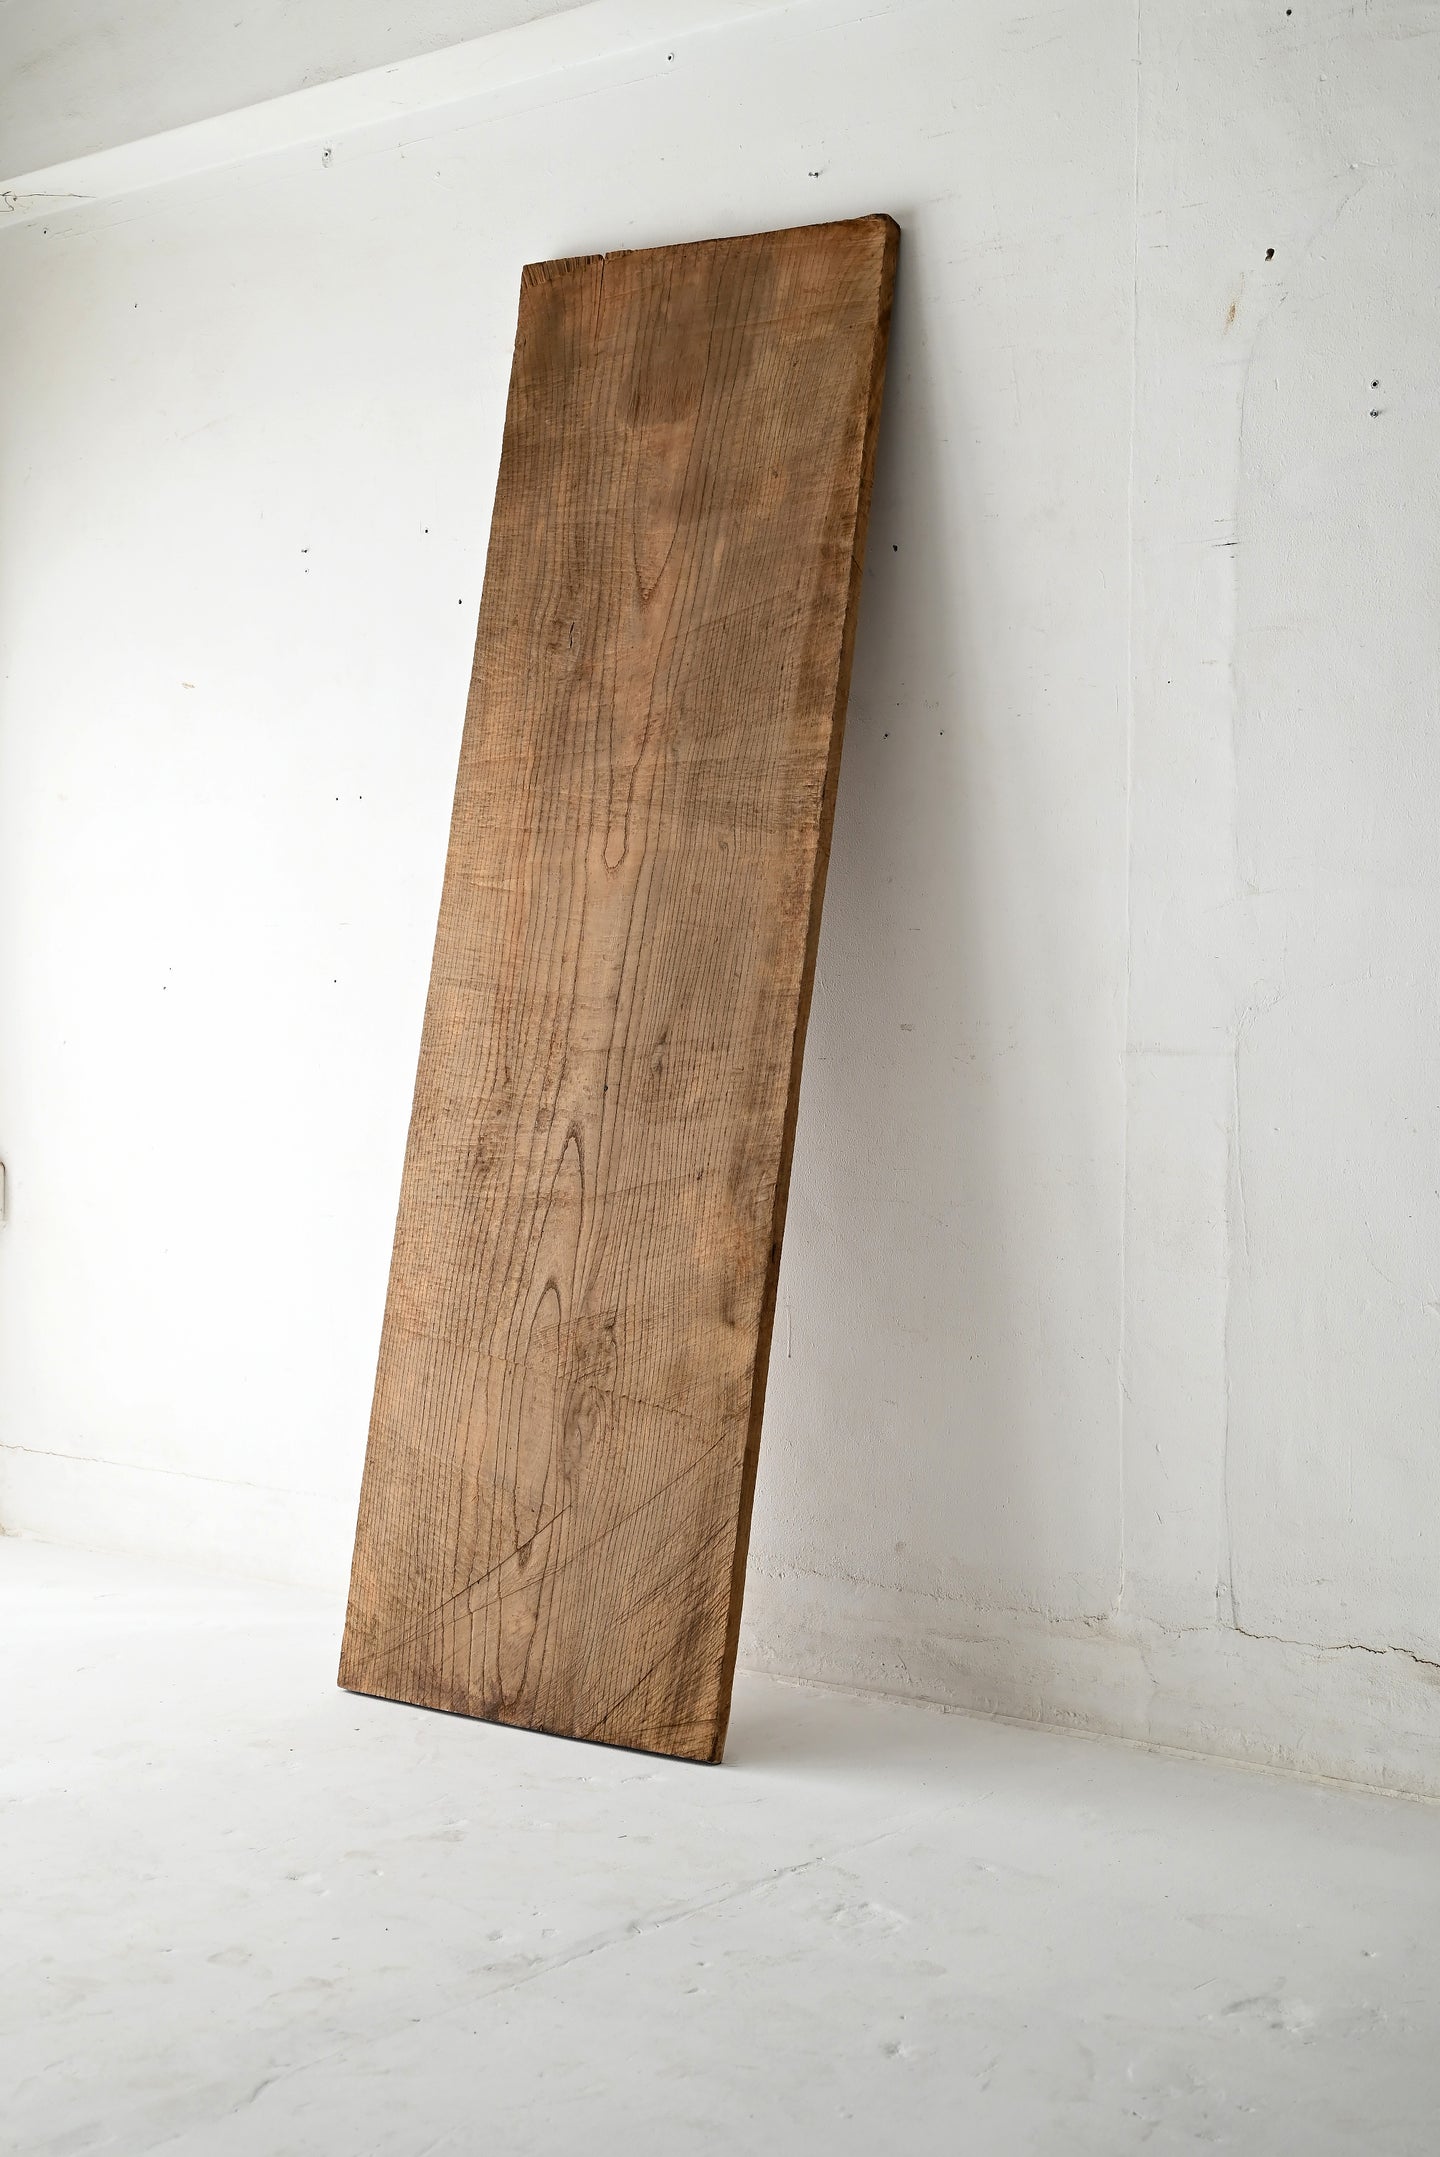 木の板